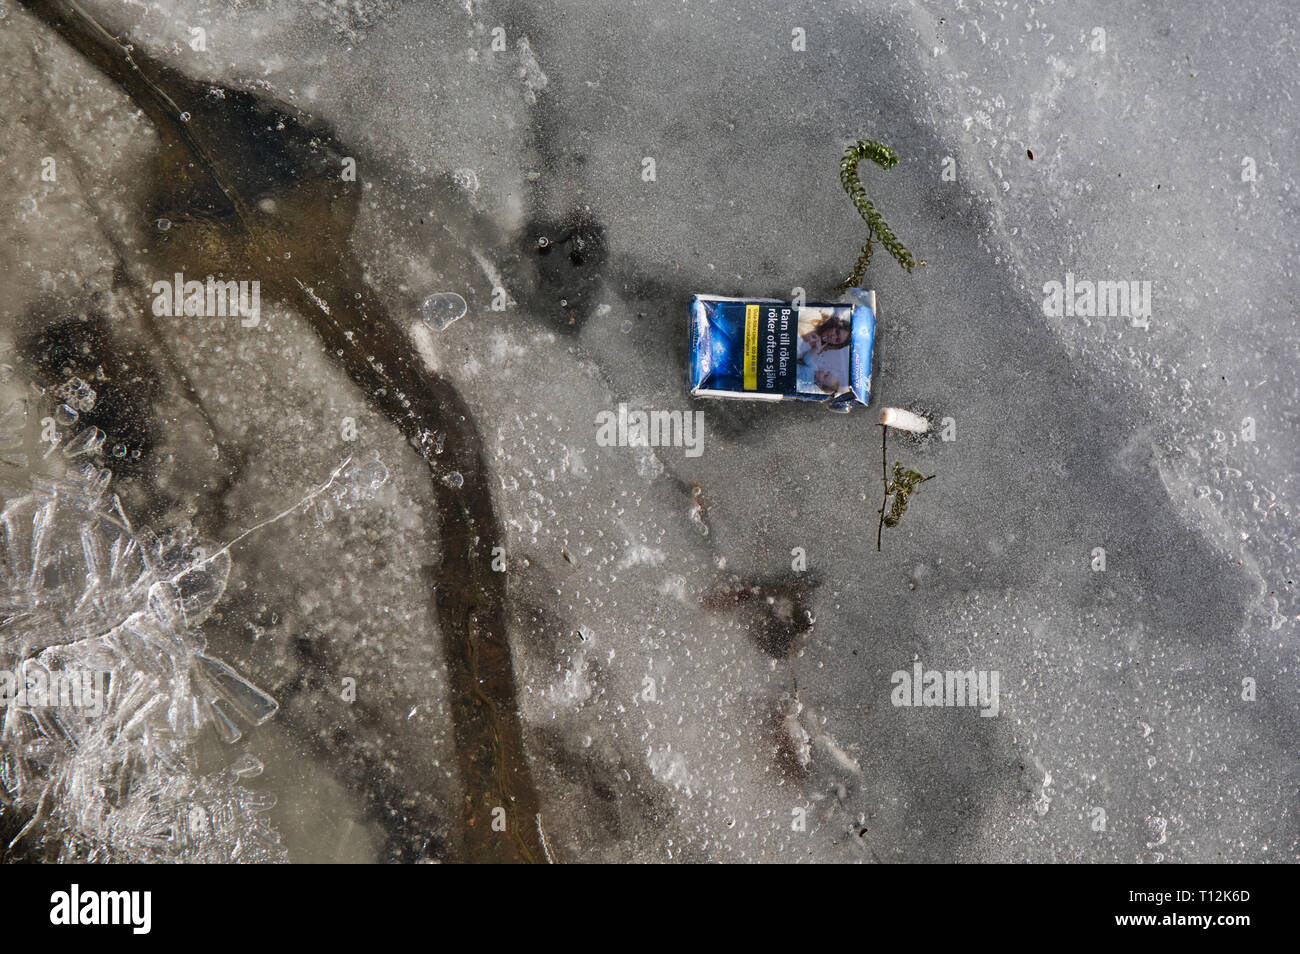 Scartato pacchetto di sigarette congelate in ghiaccio del lago, Svezia e Scandinavia Foto Stock